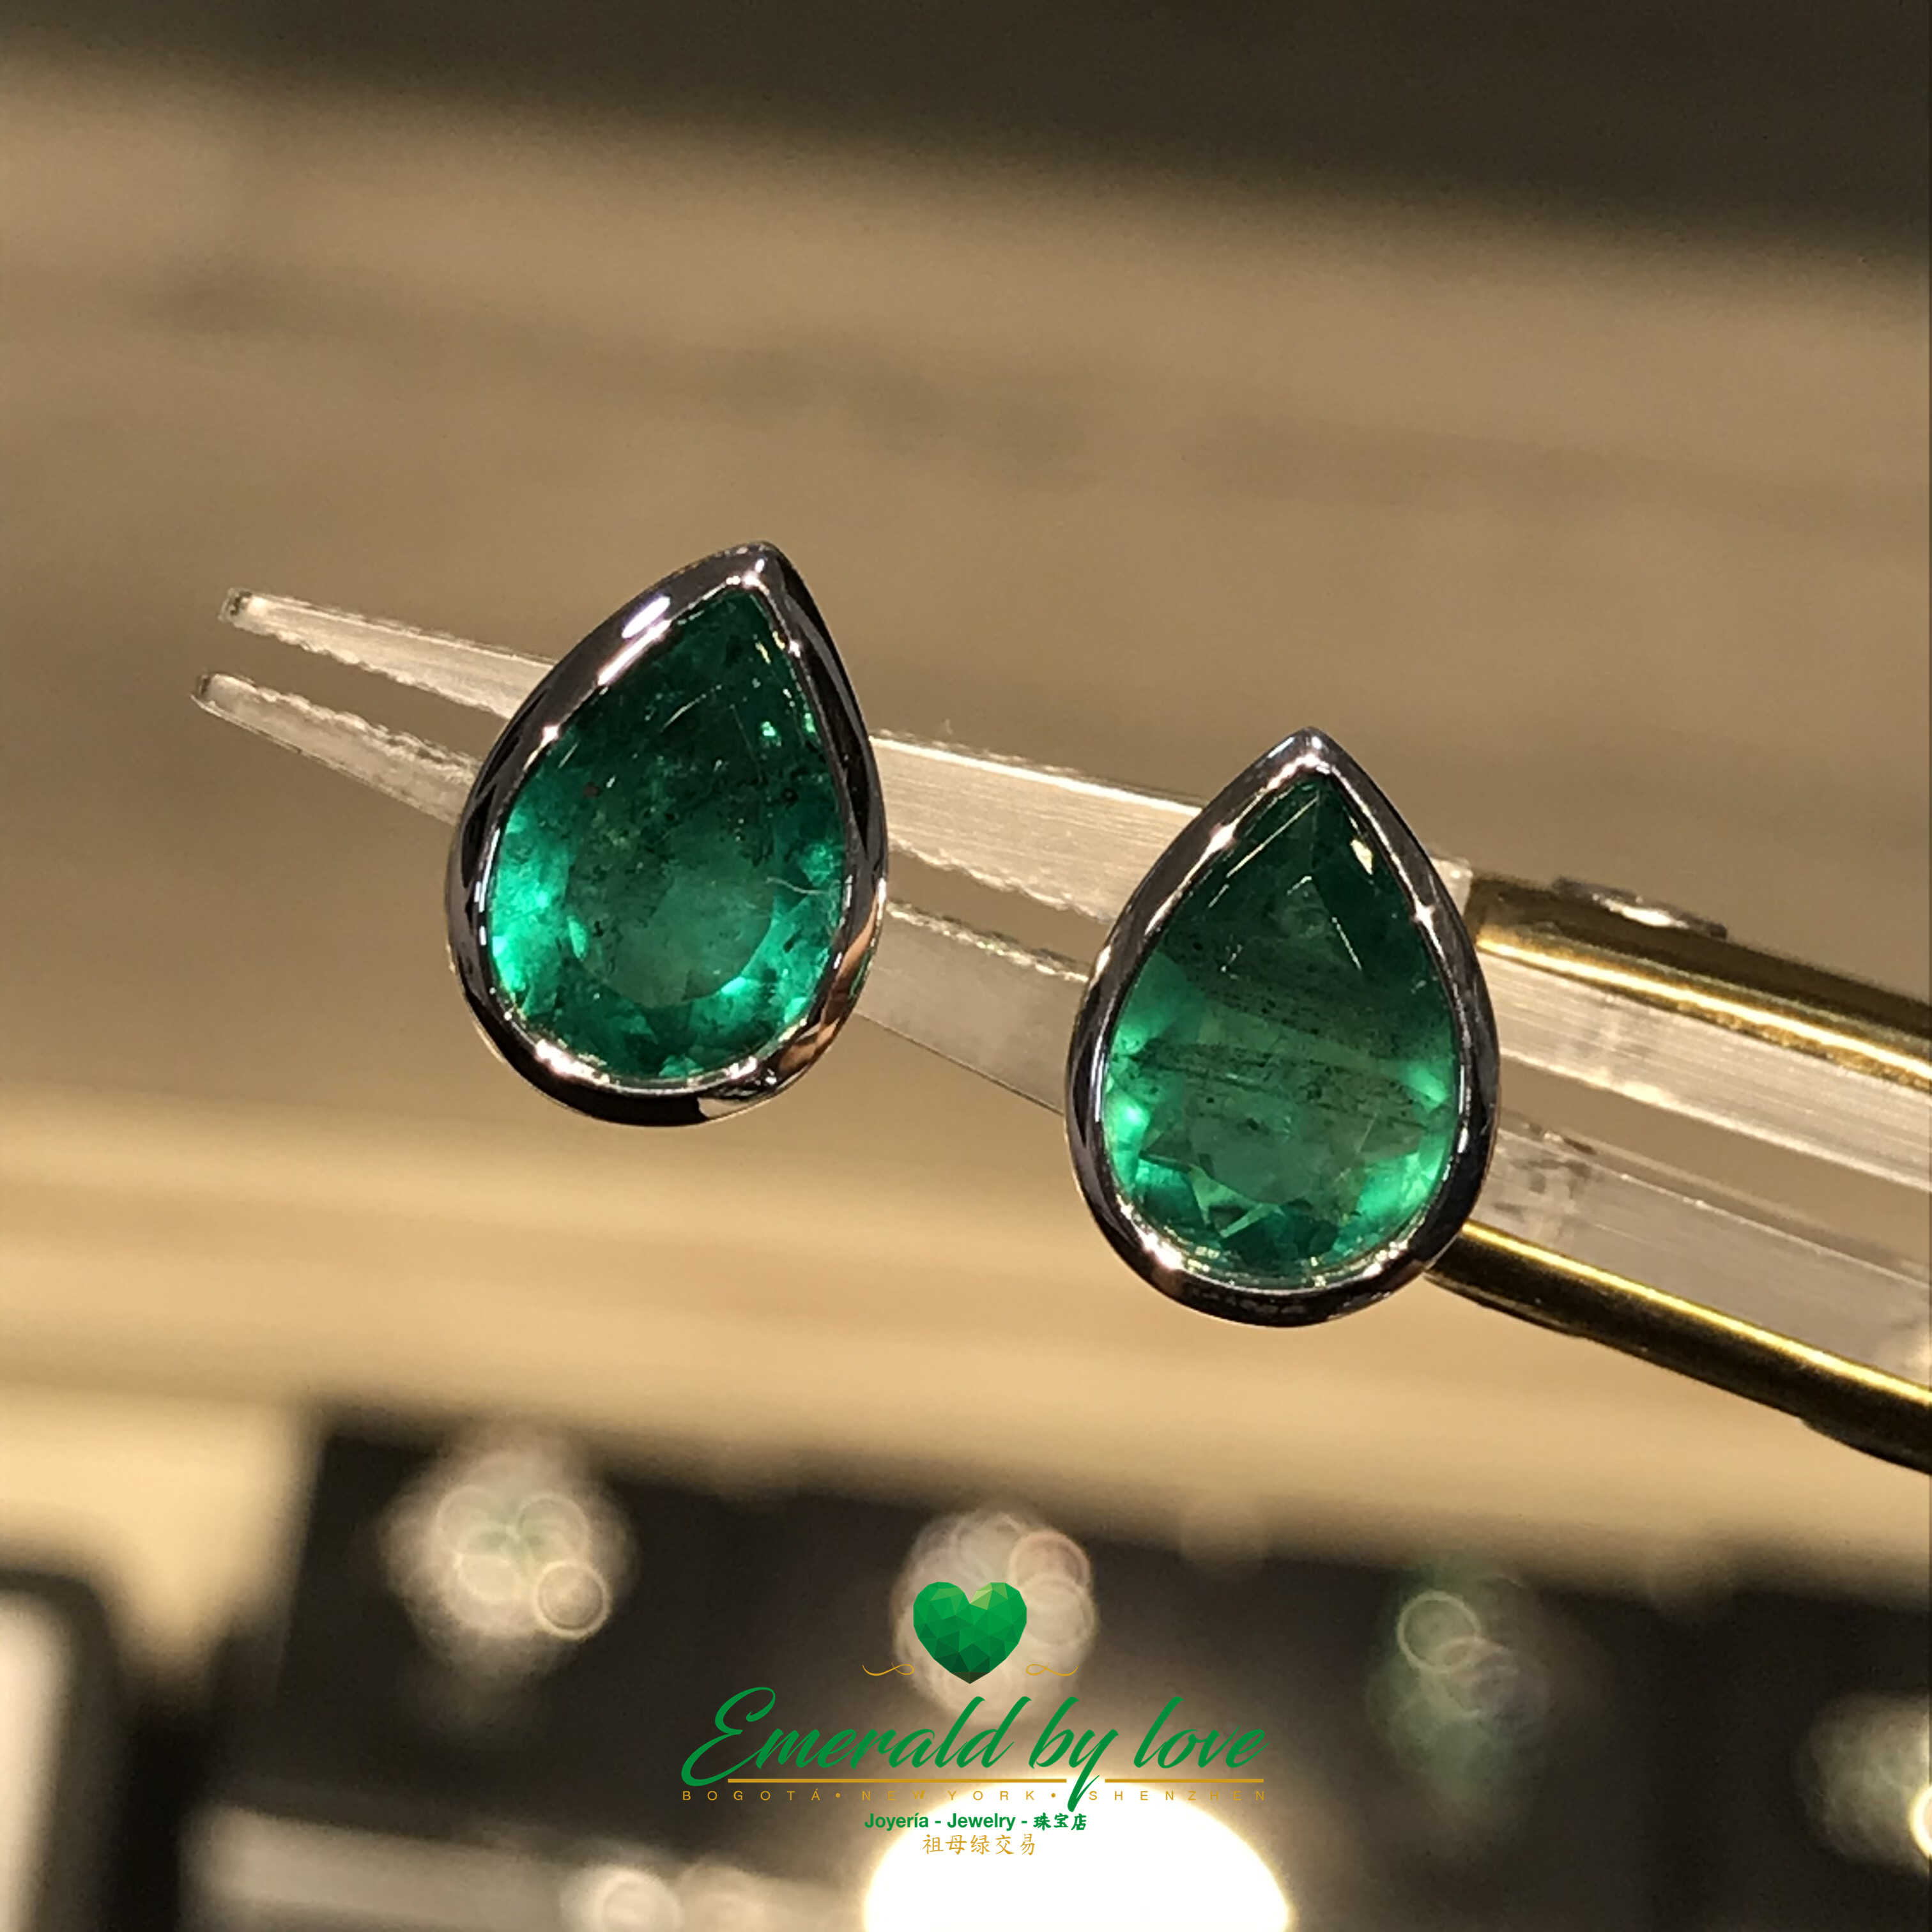 Teardrop-Cut Colombian Emerald Earrings in 18K White Gold